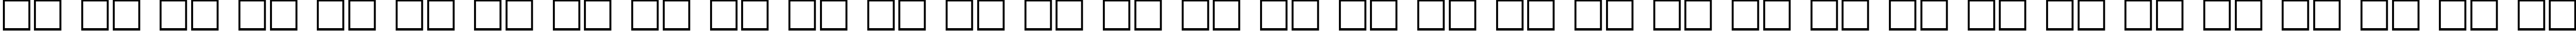 Пример написания русского алфавита шрифтом Chicago Plain:001.001